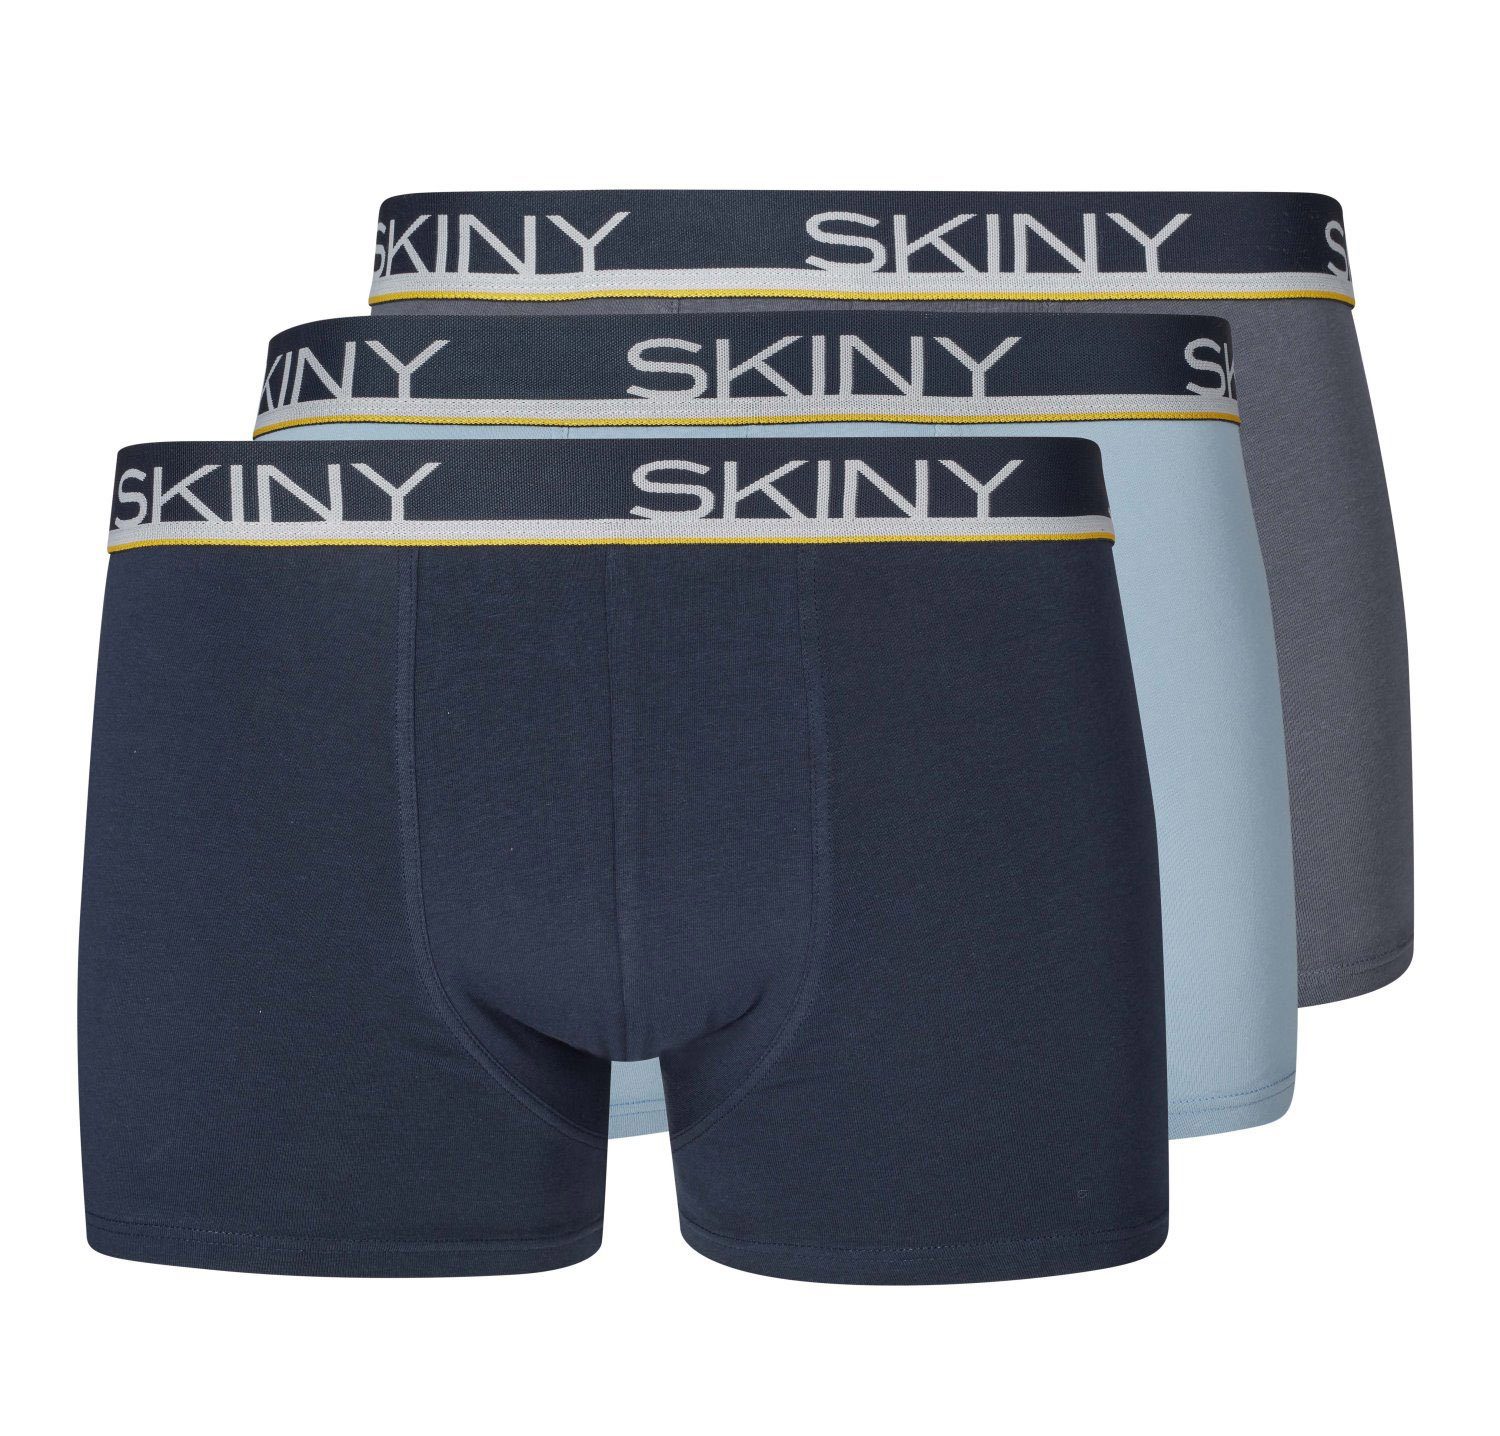 Skiny Retro Pants Skiny Herren Boxershorts 3er Pack (3-St) 3er Pack 2105 chili pepper selection